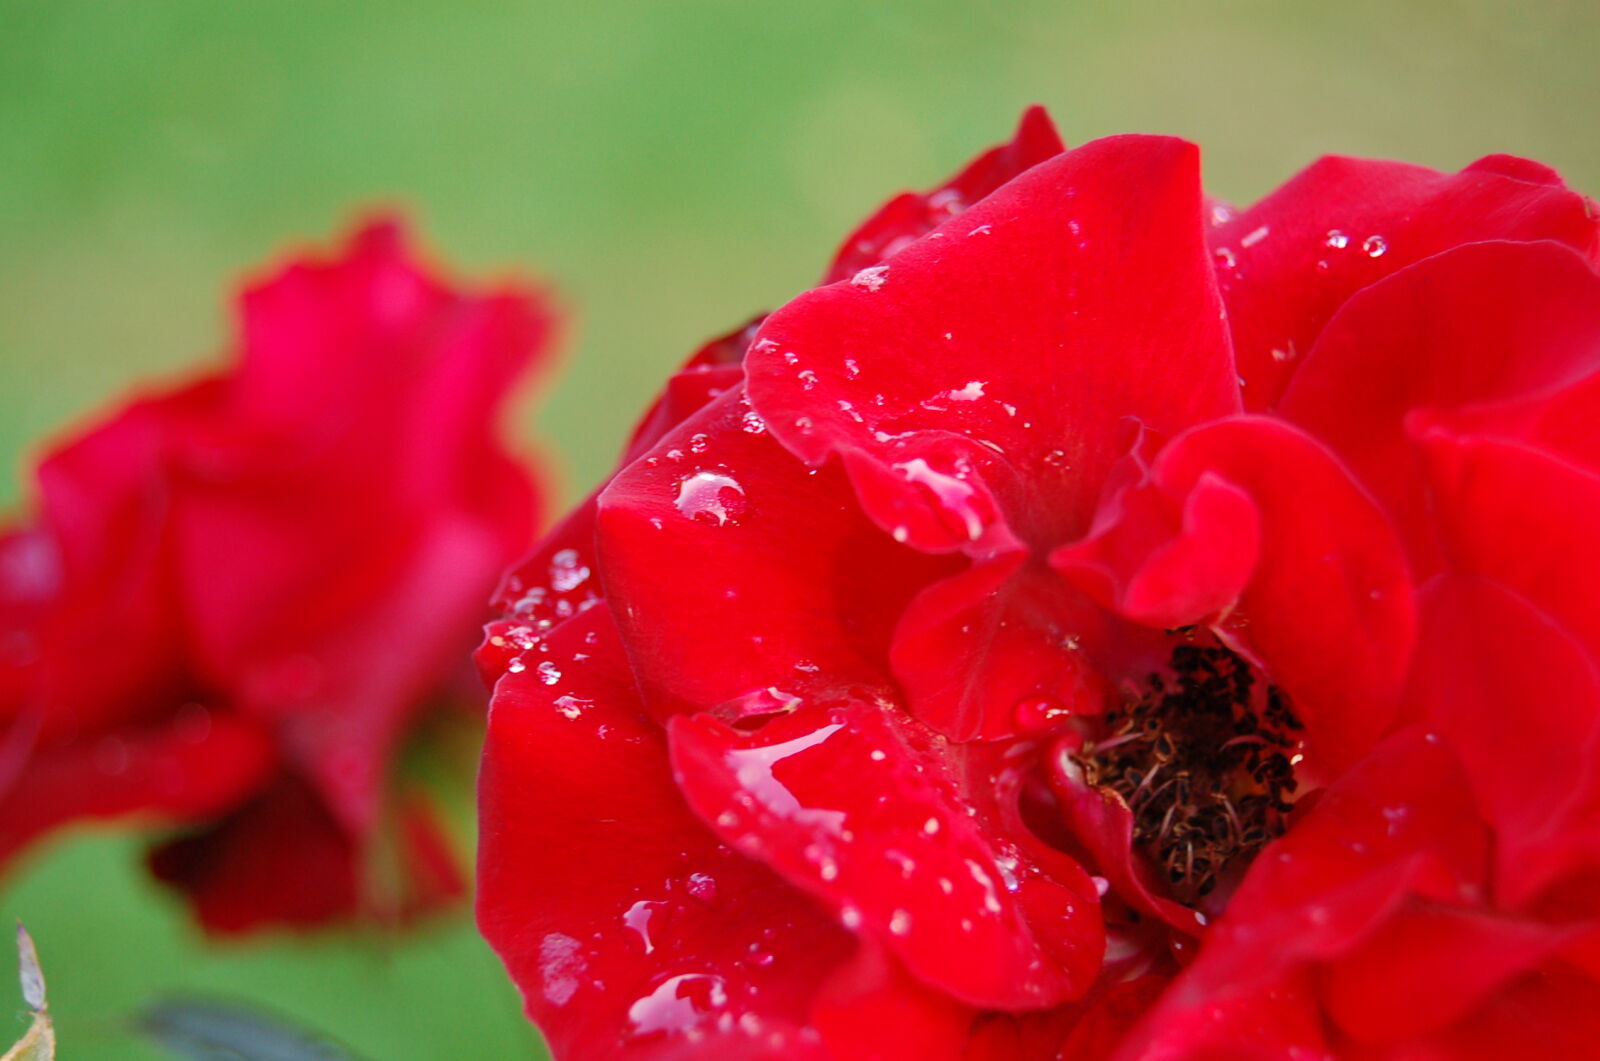 AF-S DX Zoom-Nikkor 18-55mm f/3.5-5.6G ED sample photo. Drops, flower, red, rose photography